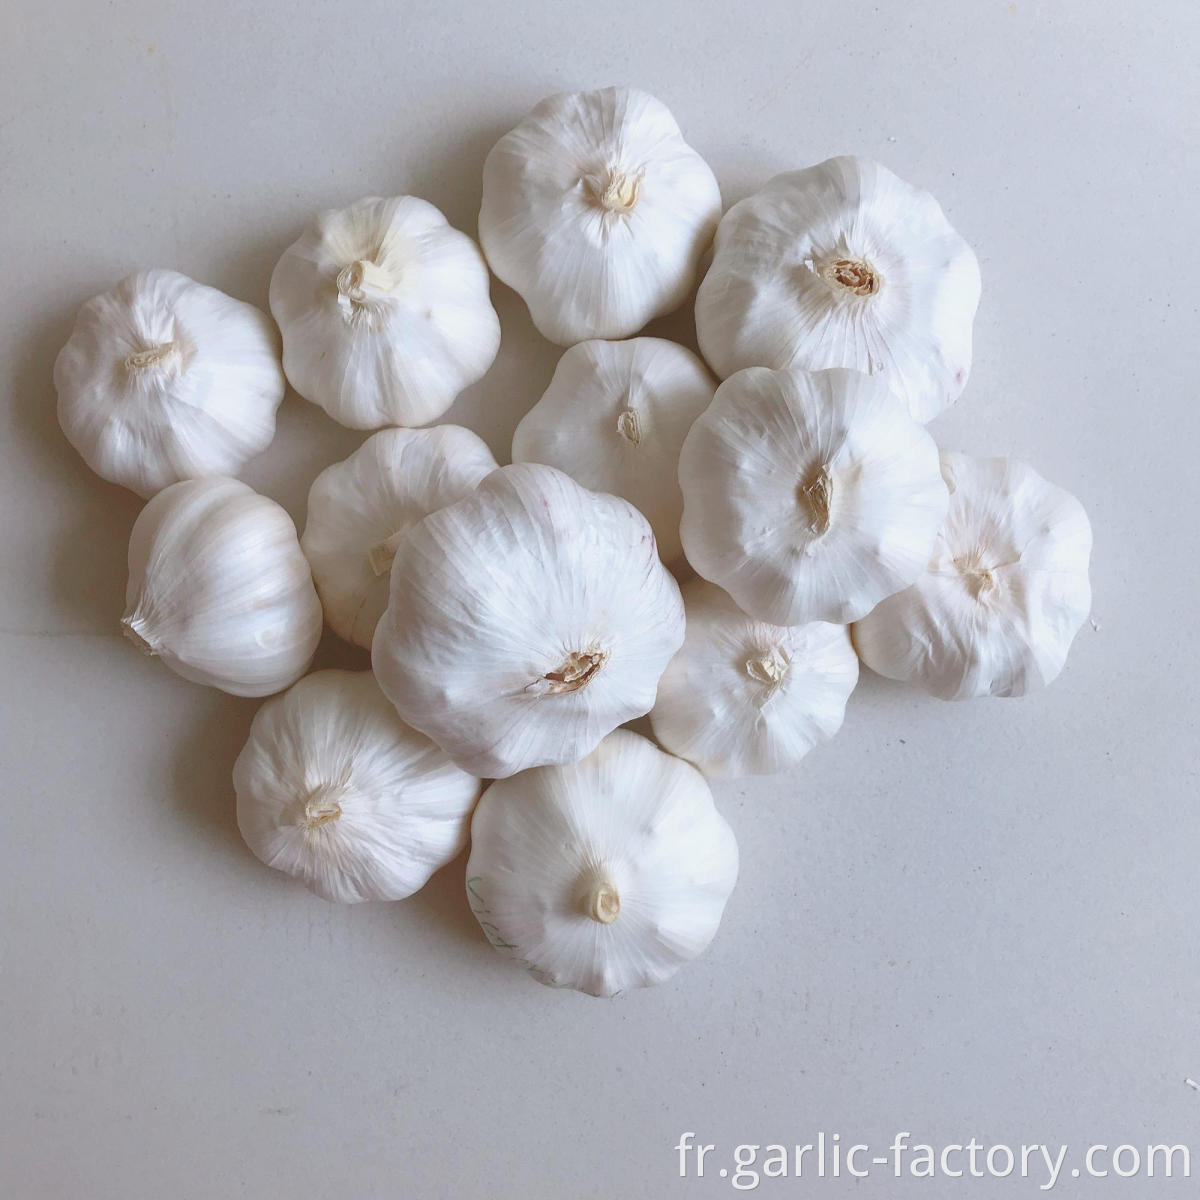 Cheap and good fresh garlic ajo 